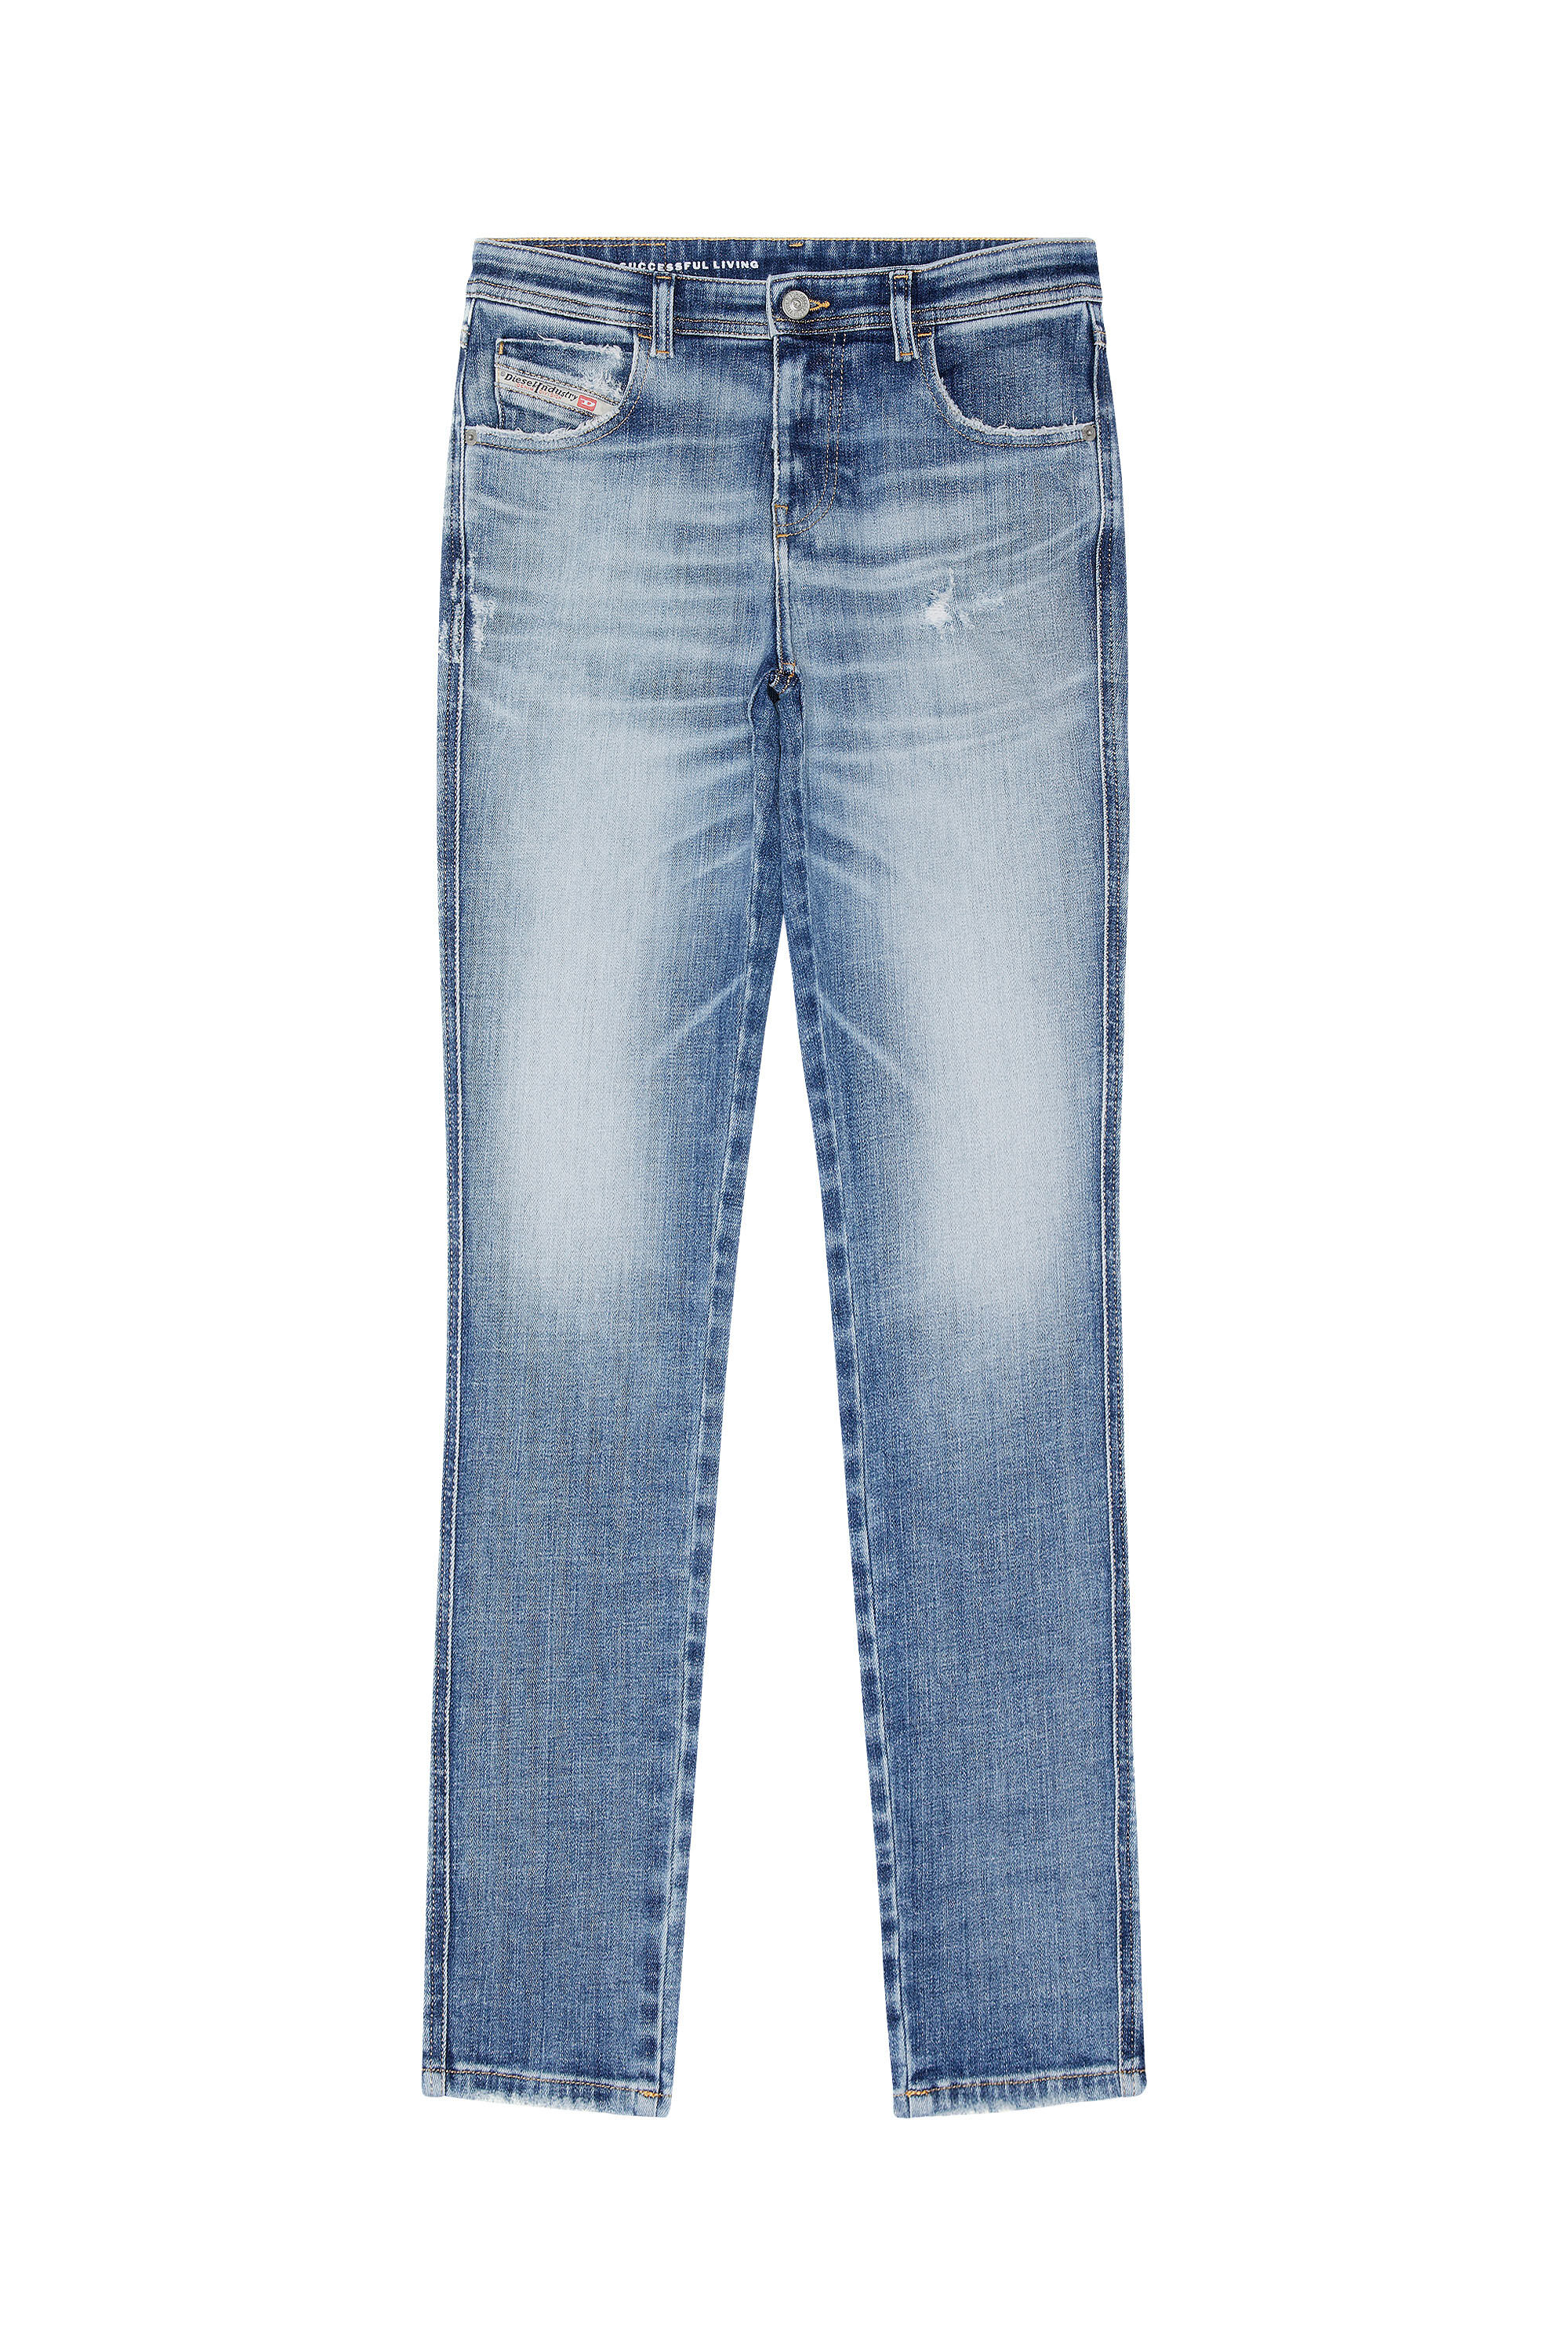 Women's Skinny Jeans | Medium blue | Diesel 2015 Babhila